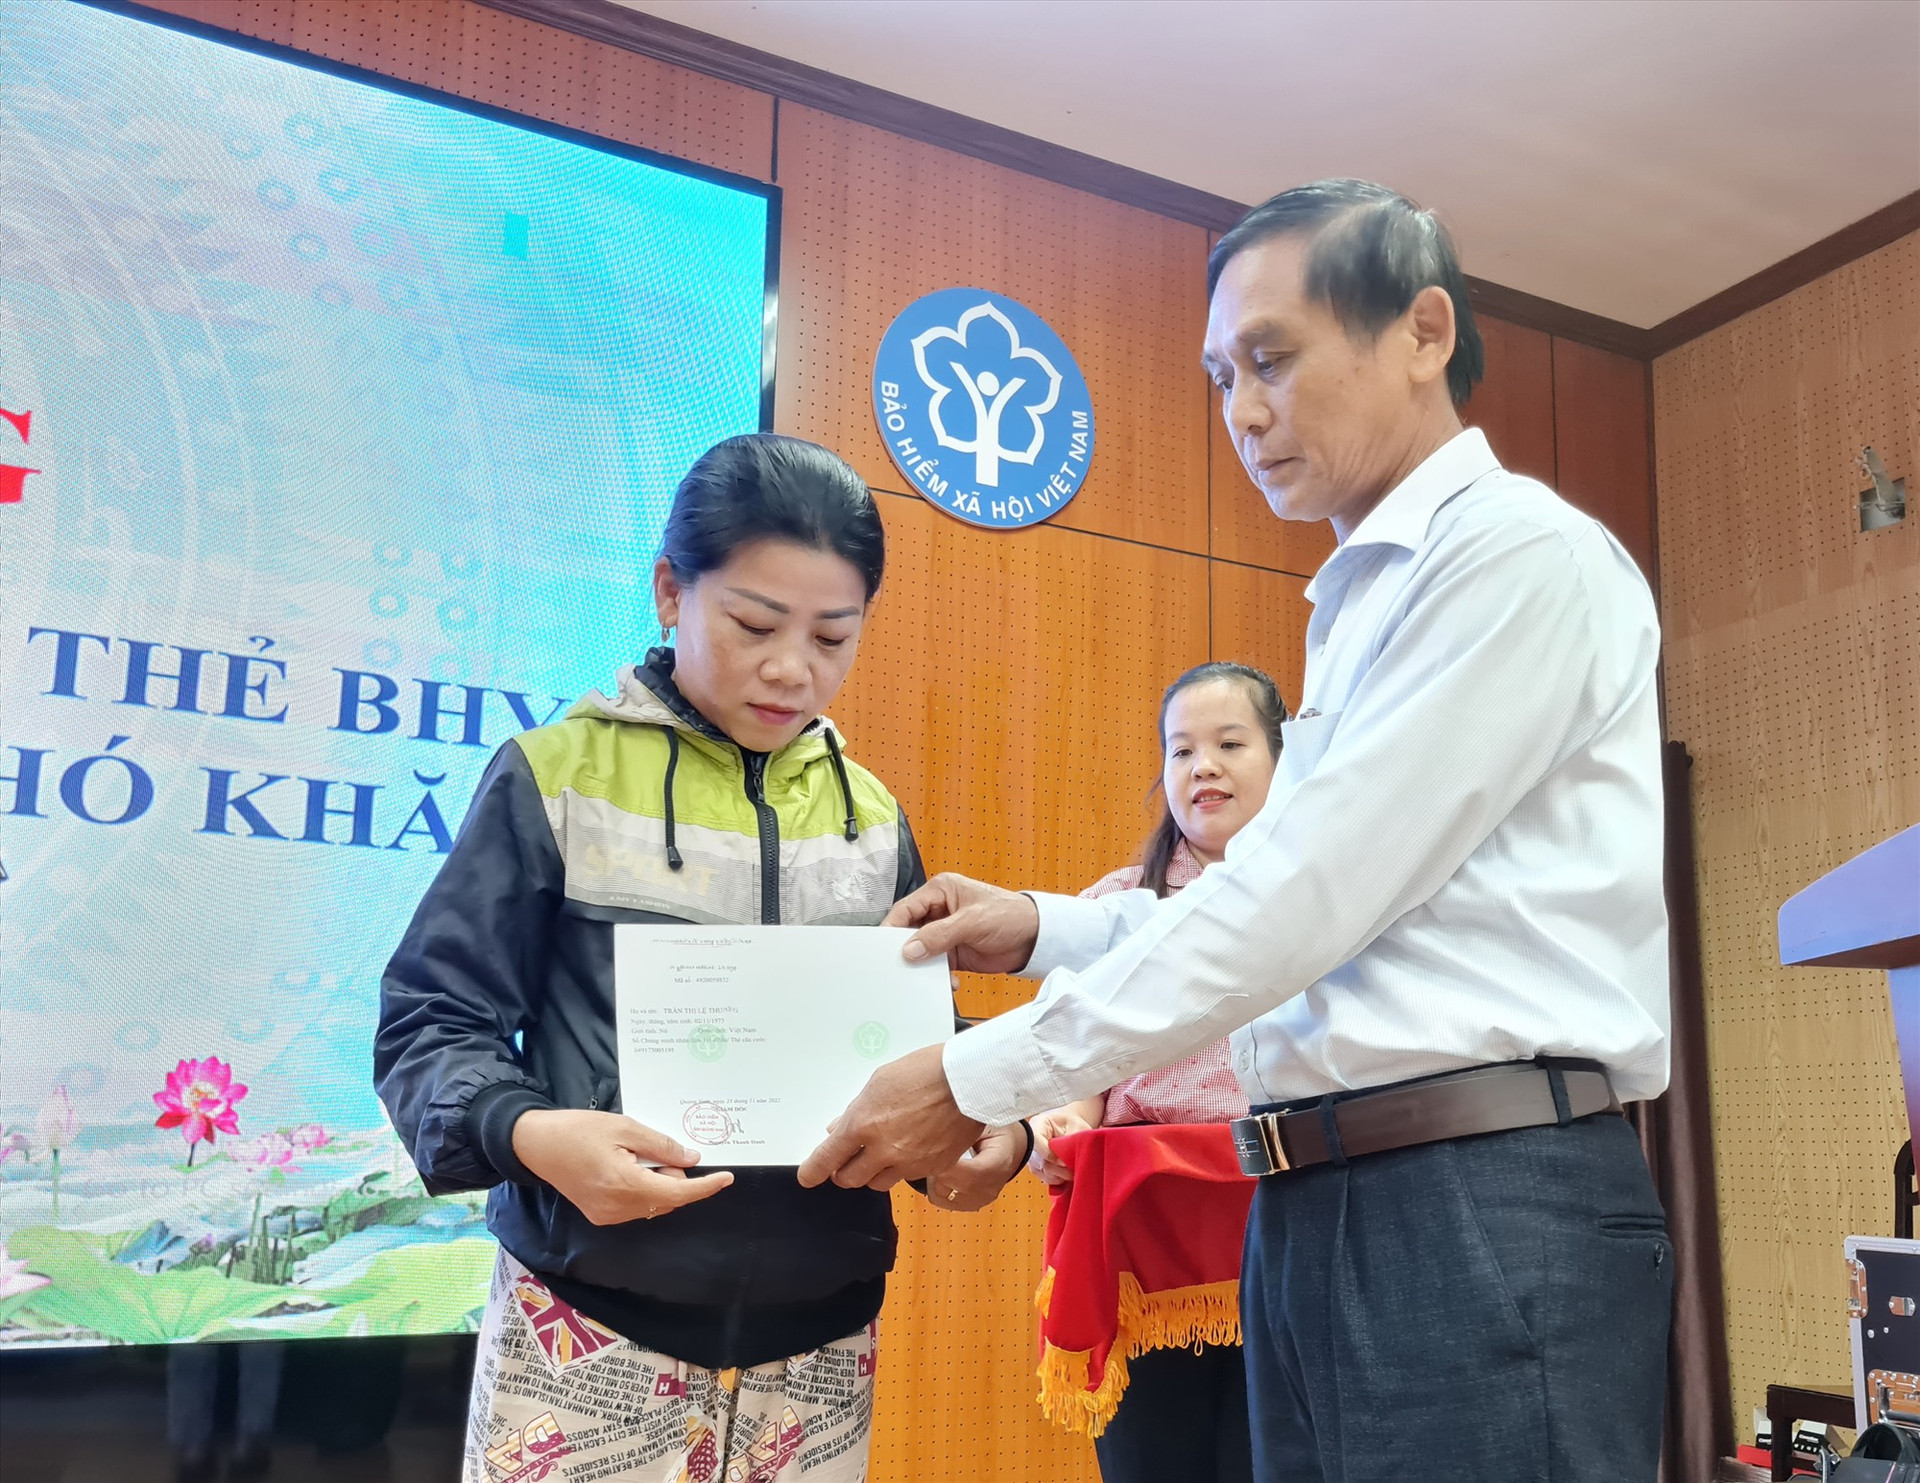 Bà Trần Thị Lệ Thương nhận sổ bảo hiểm xã hội tại lễ phát động chương trình của Bảo hiểm Xã hội Việt Nam. Ảnh: D.L